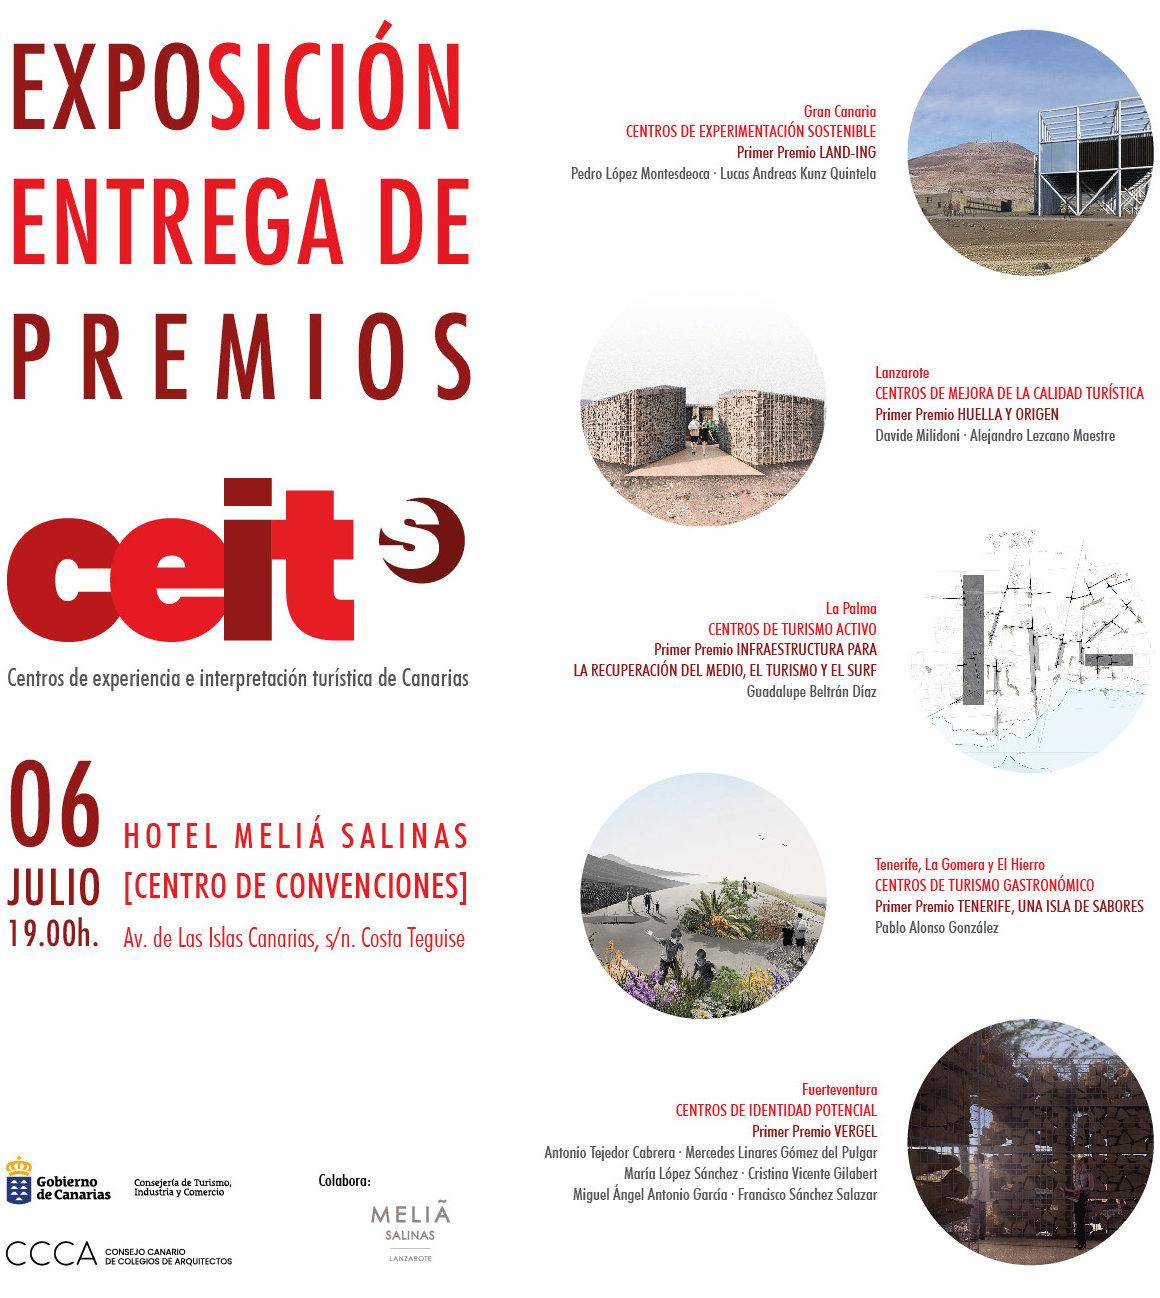 Entrega de premios e inauguración de la exposición del concurso Ceit Canarias